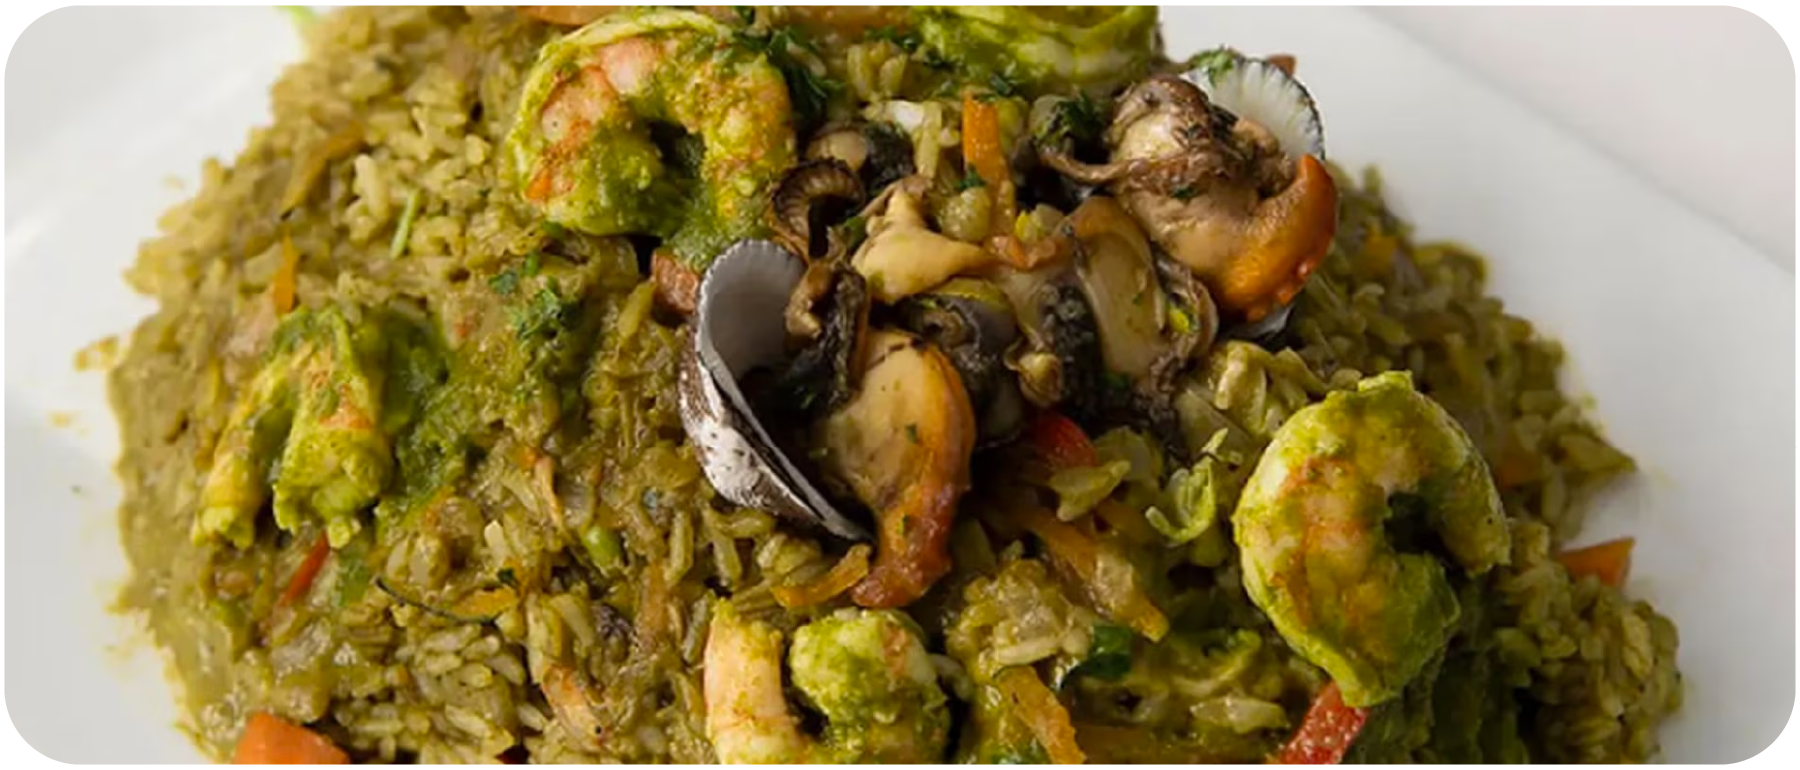 Arroz Verde con Mariscos - Peruvian Delicious Green Rice with Seafood Recipe